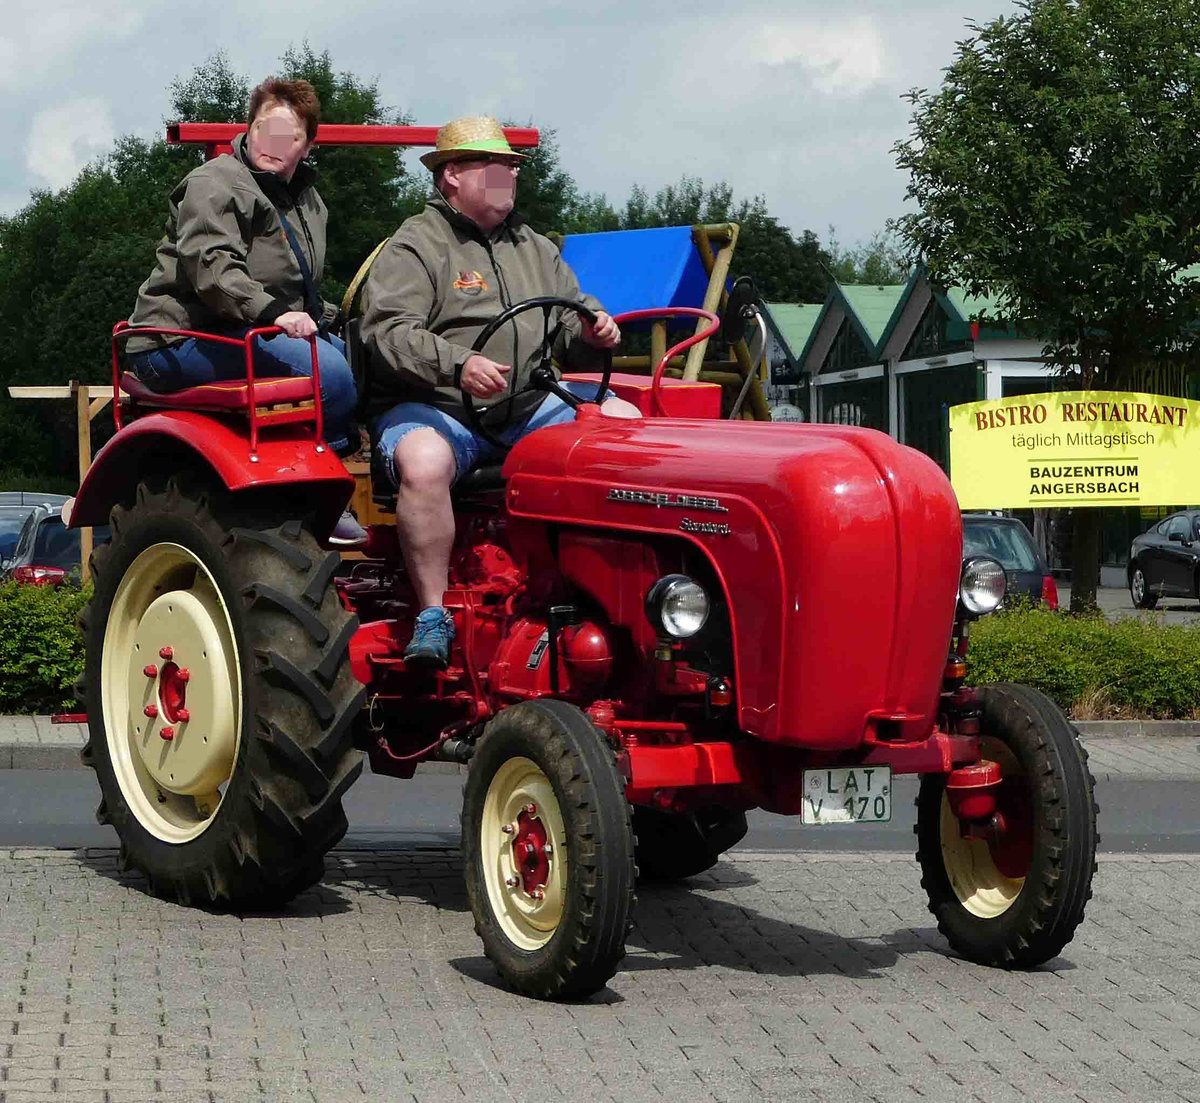 =Porsche Standard besucht die Traktorenausstellung  Ahle Bulldogge us Angeschbach oh Lannehuse  in Angersbach im Juni 2018